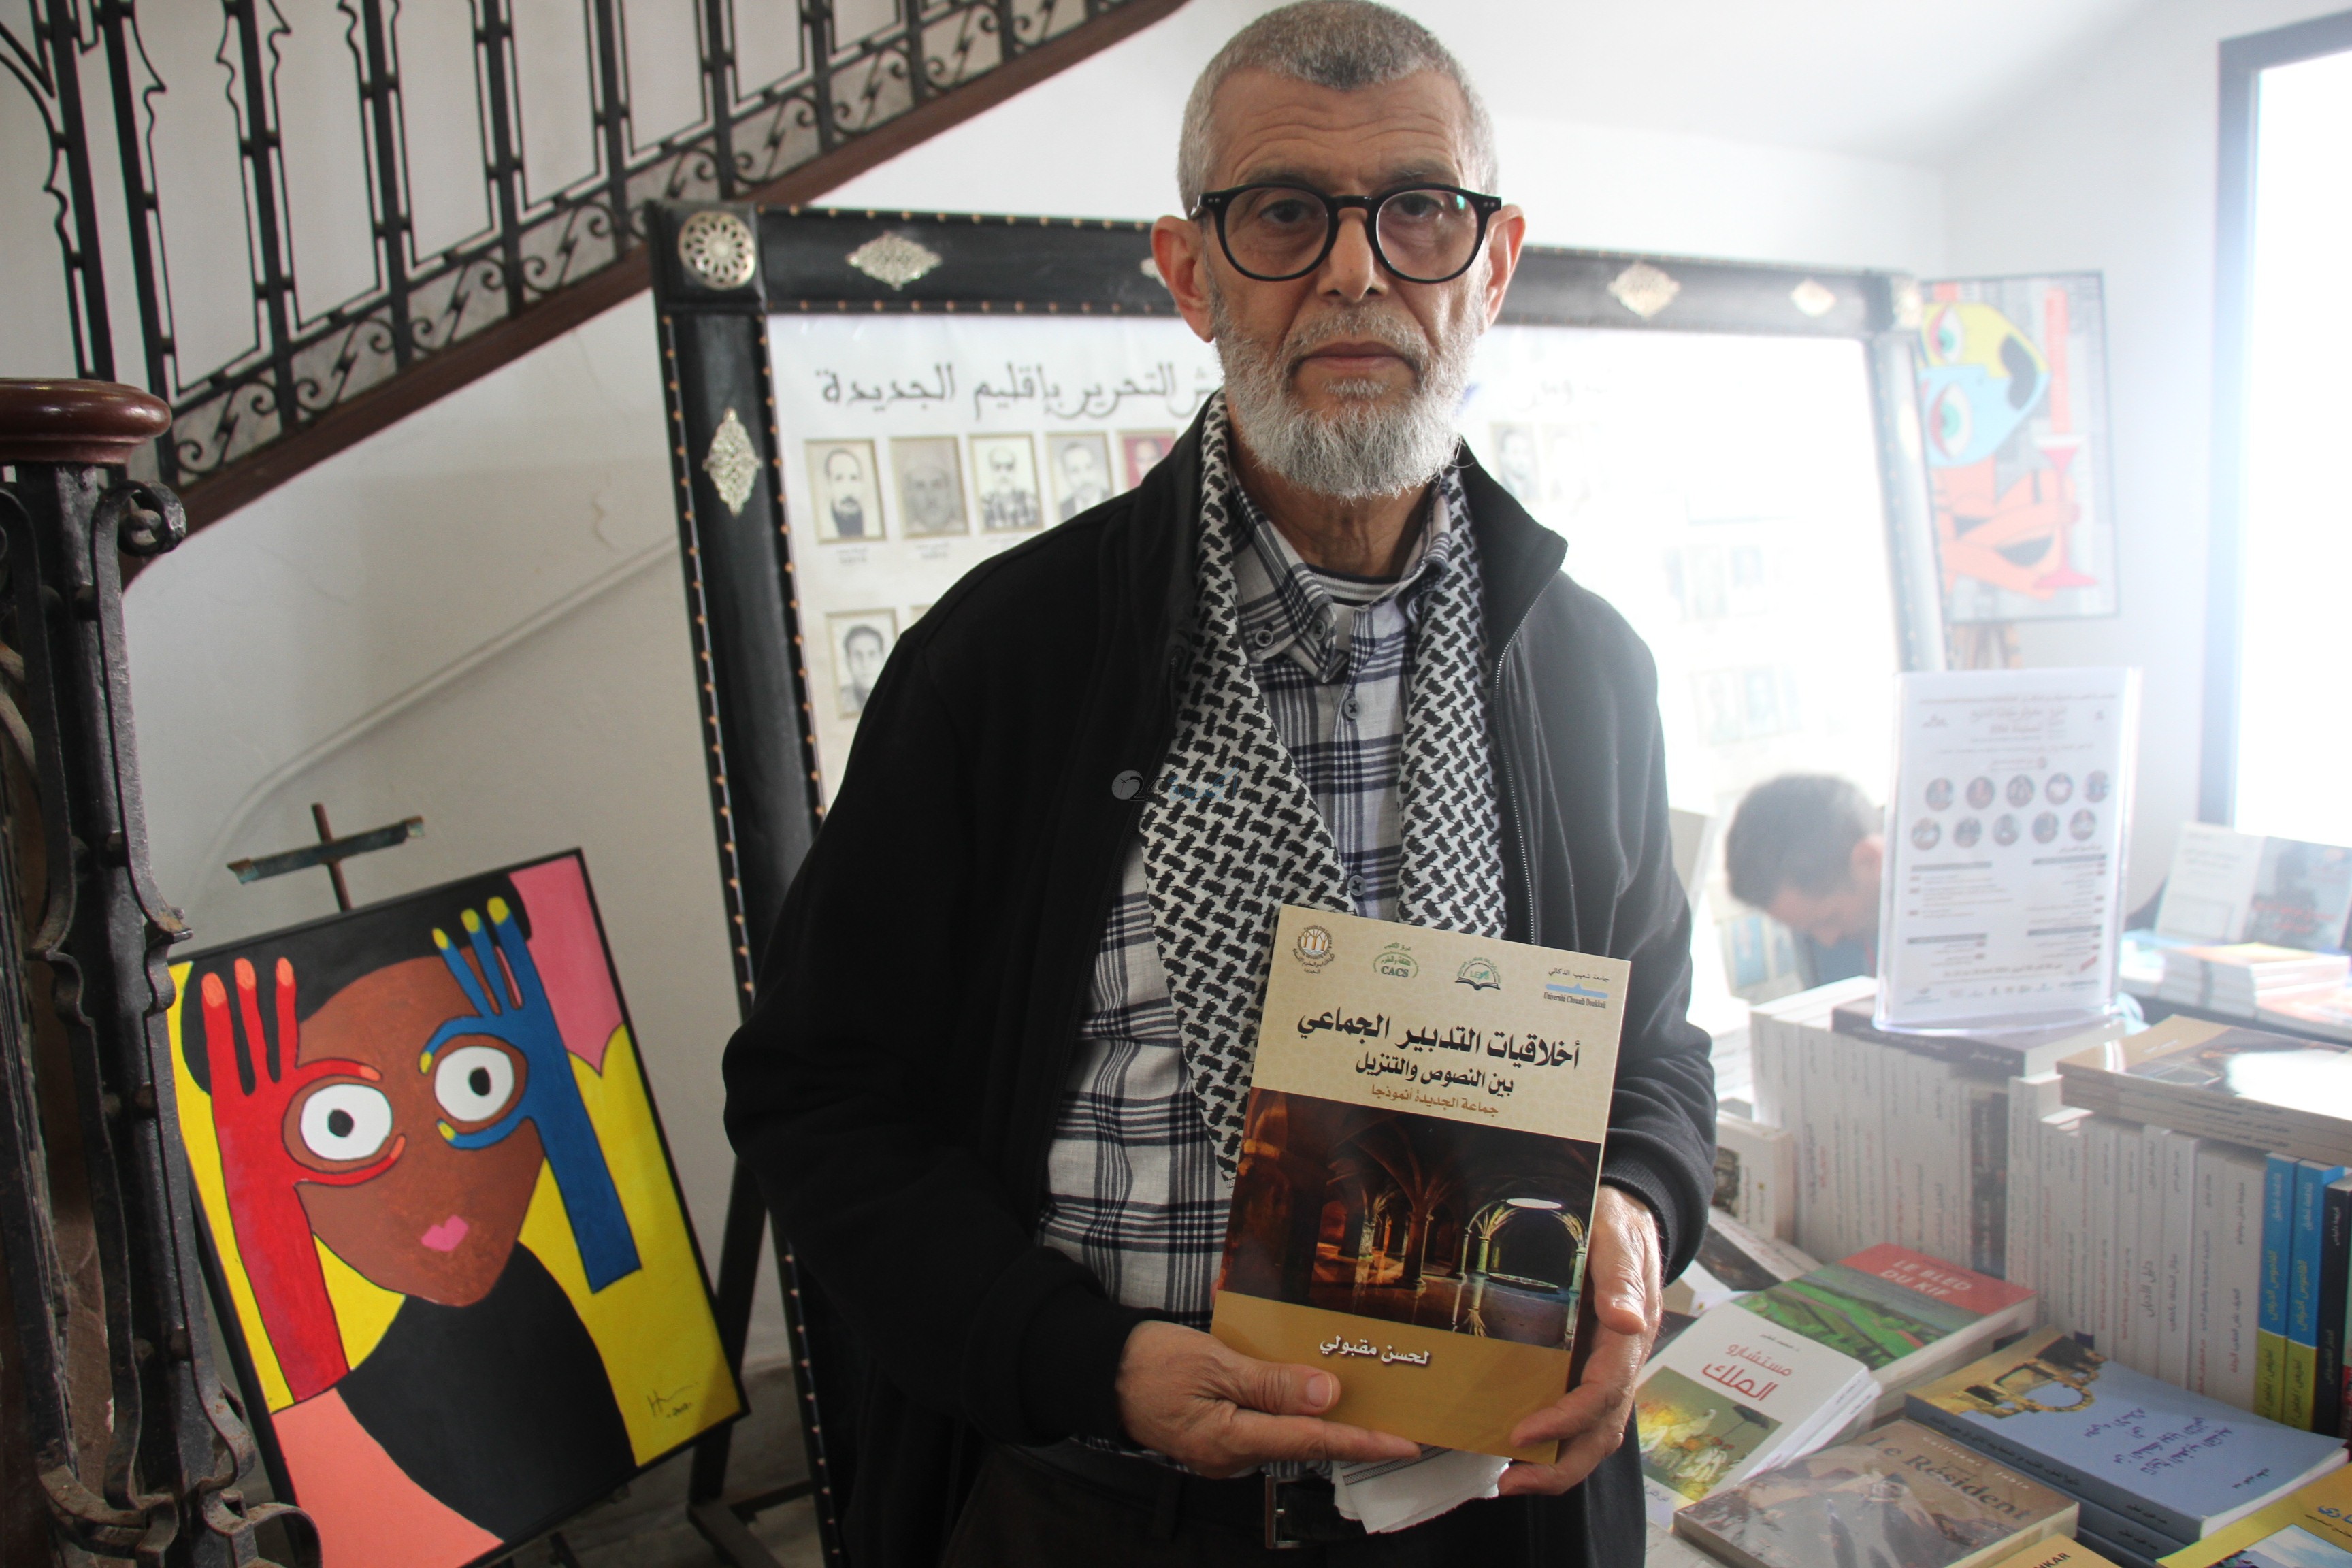 الكاتب والباحث لحسن مقبولي  يشارك بكتابه الجديد في معرض كتاب التاريخ للجديدة